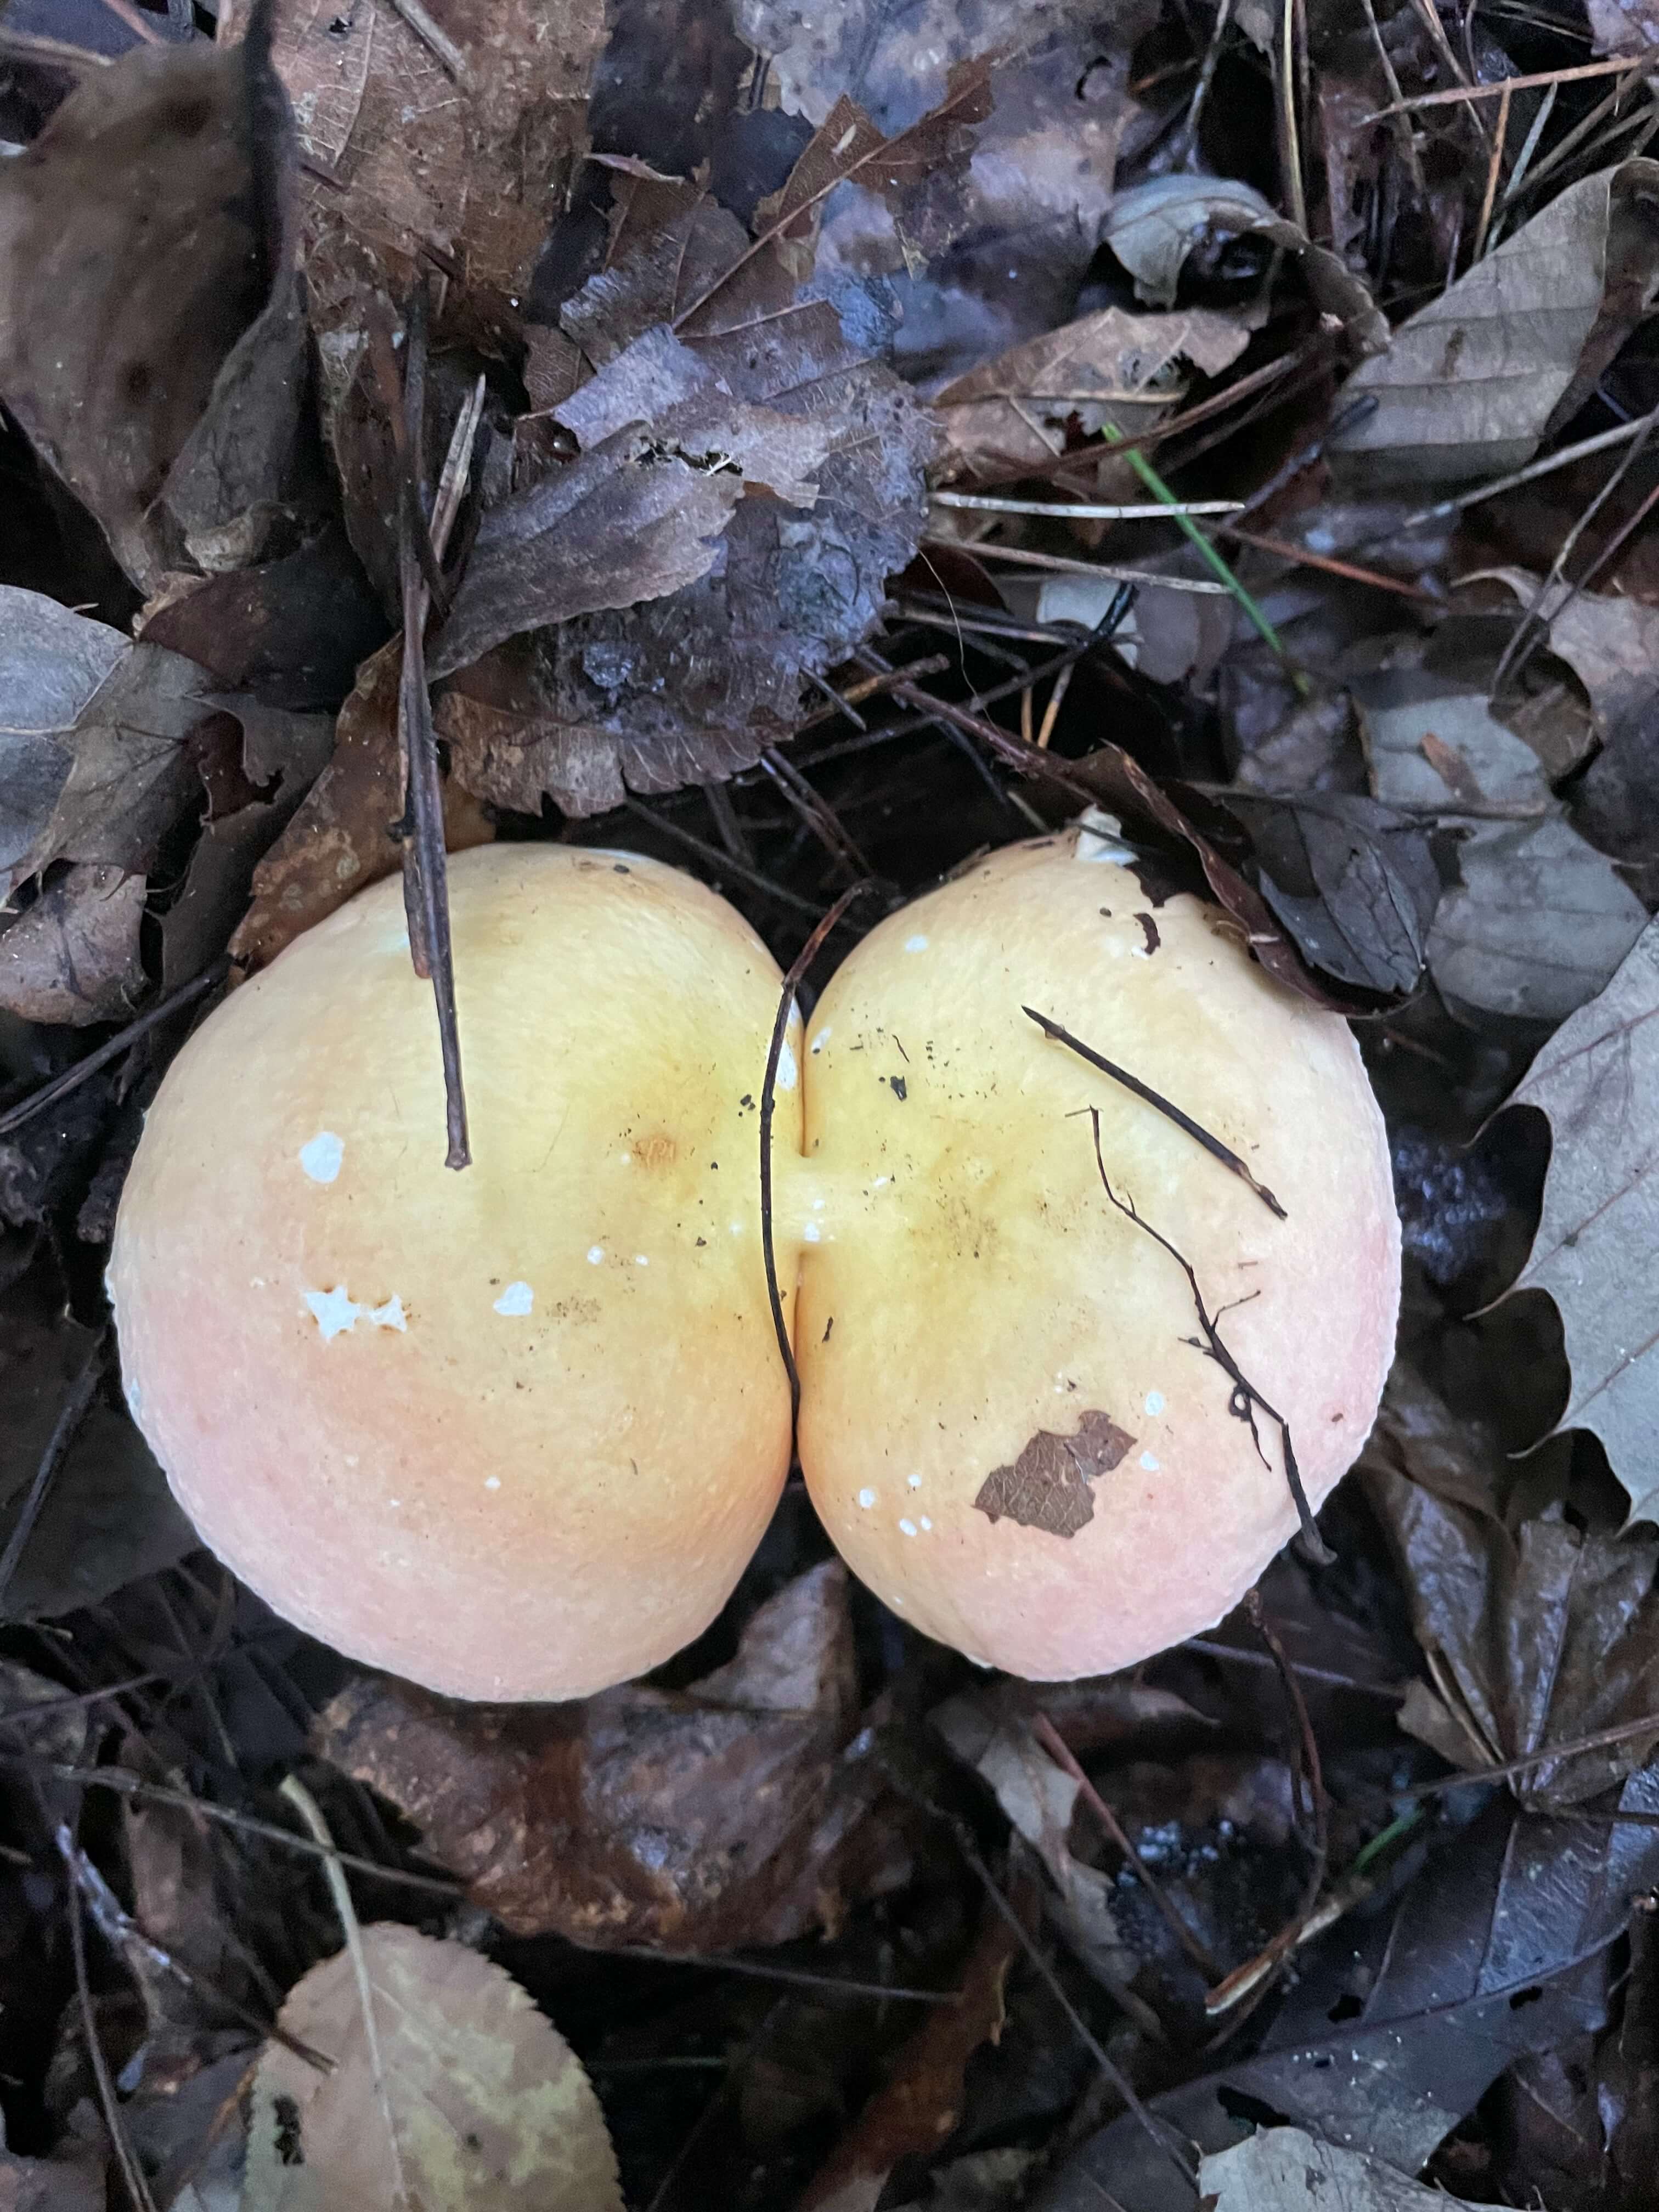 계곡을 찾아가는 길에 만난 특이한 쌍둥이 버섯